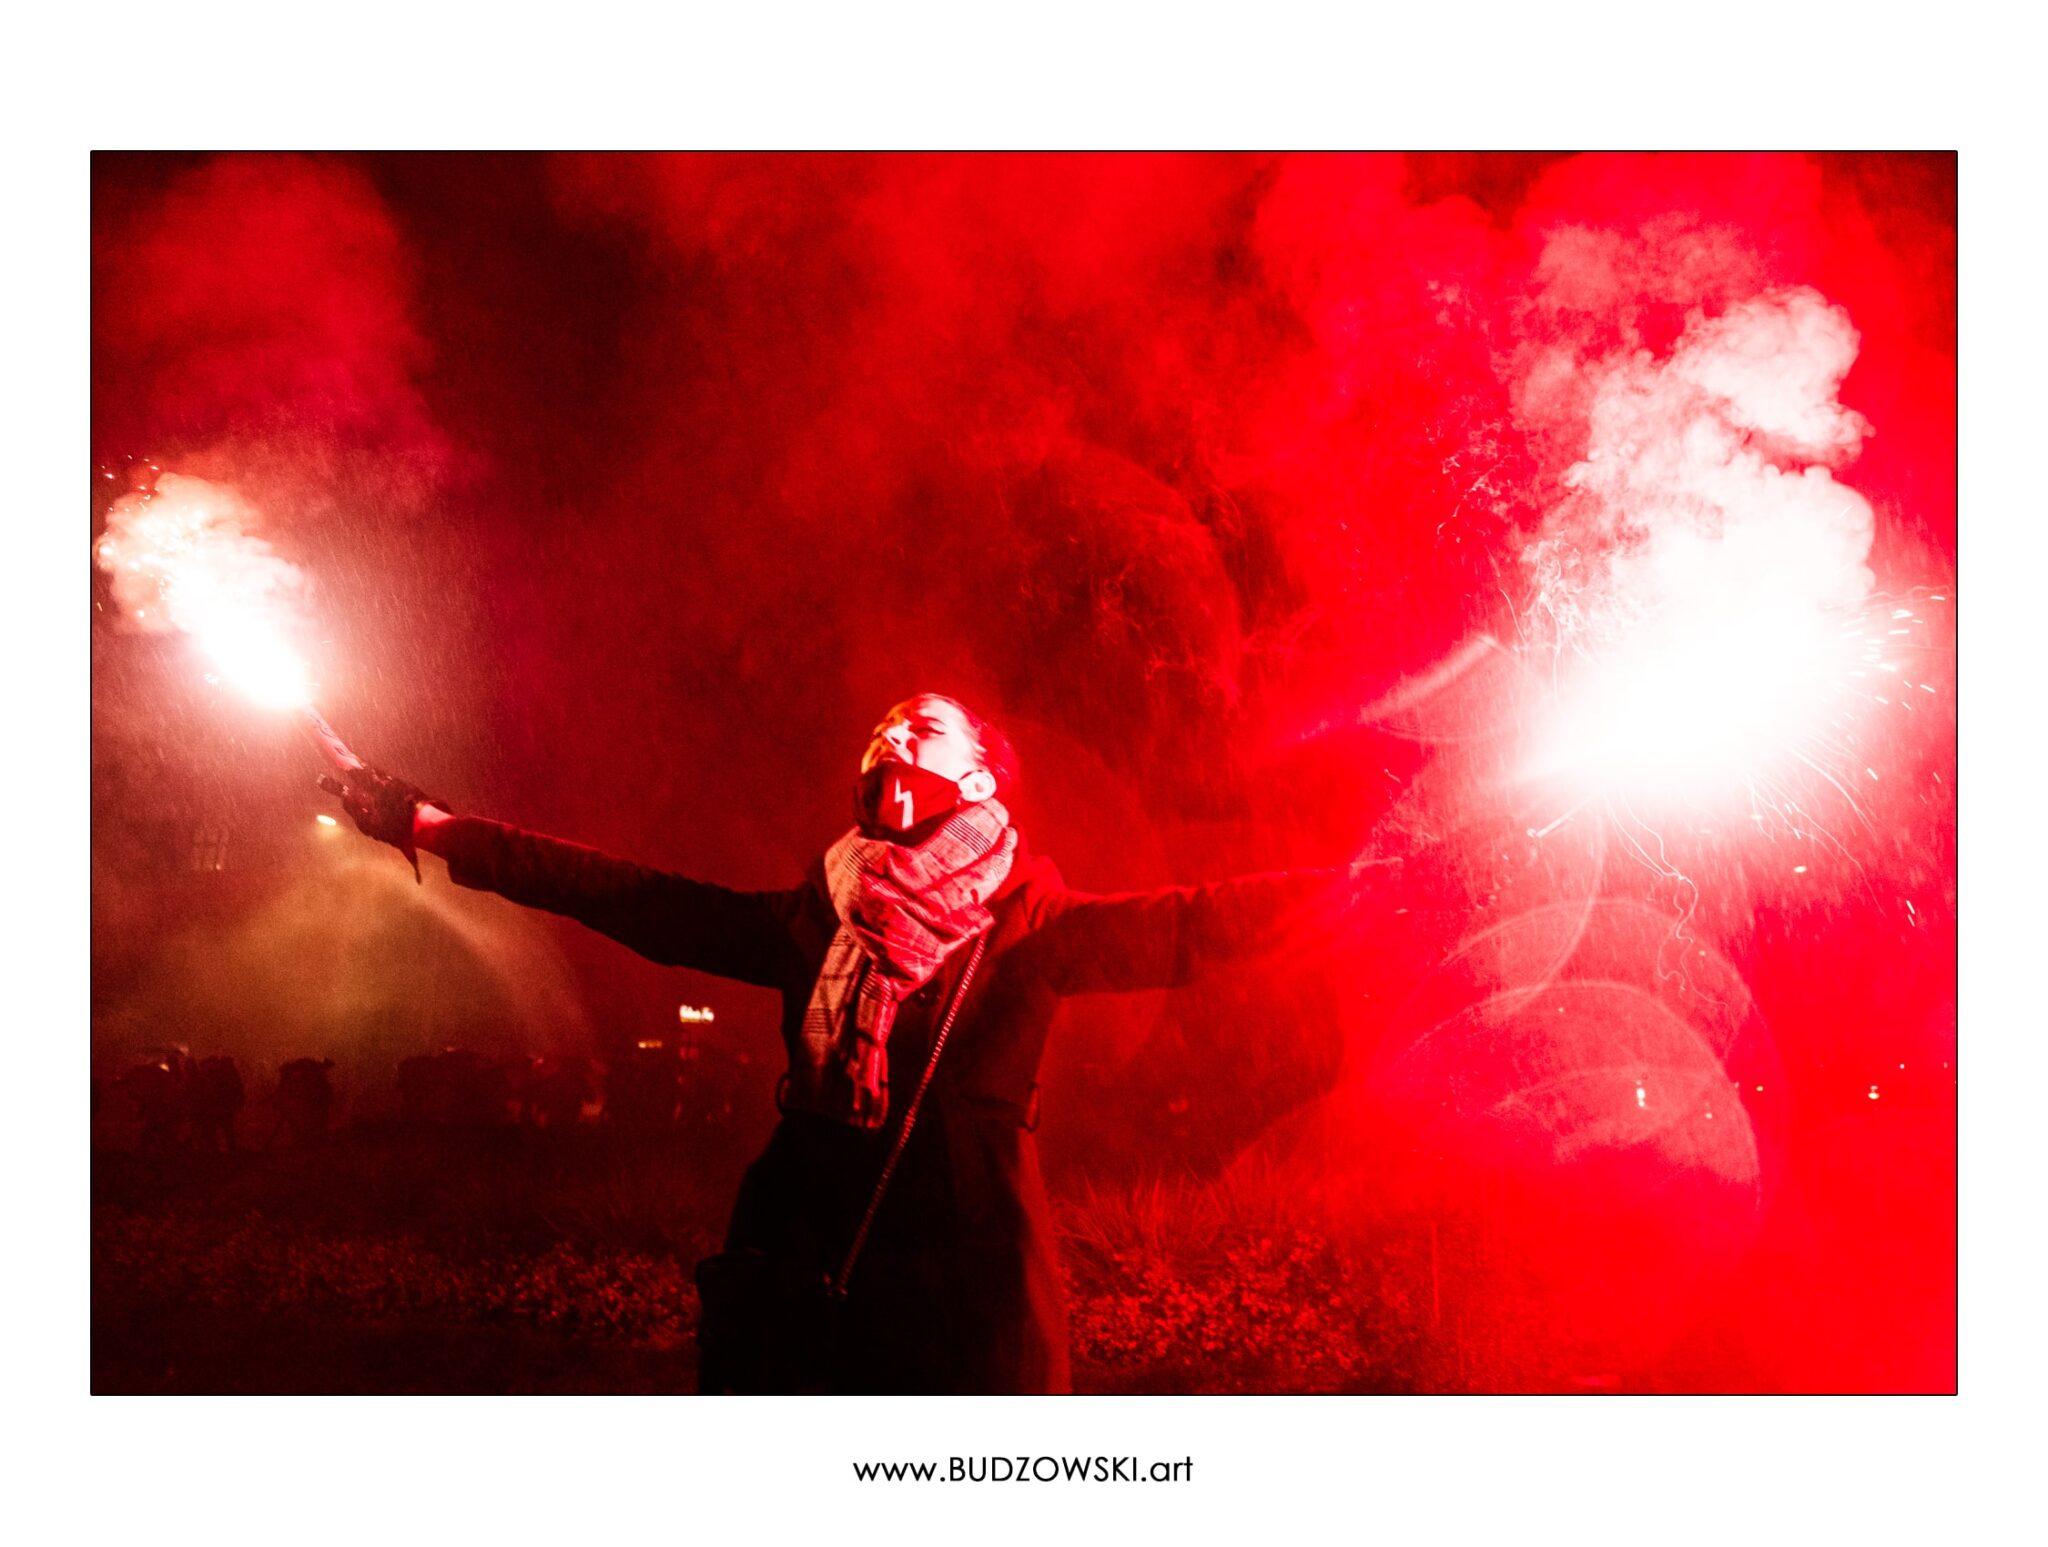 Gabriela Wiśniewska trzymając race krzyczy To jest wojna! Zdjęcie wyróżnione w konkursie fotograficznym.